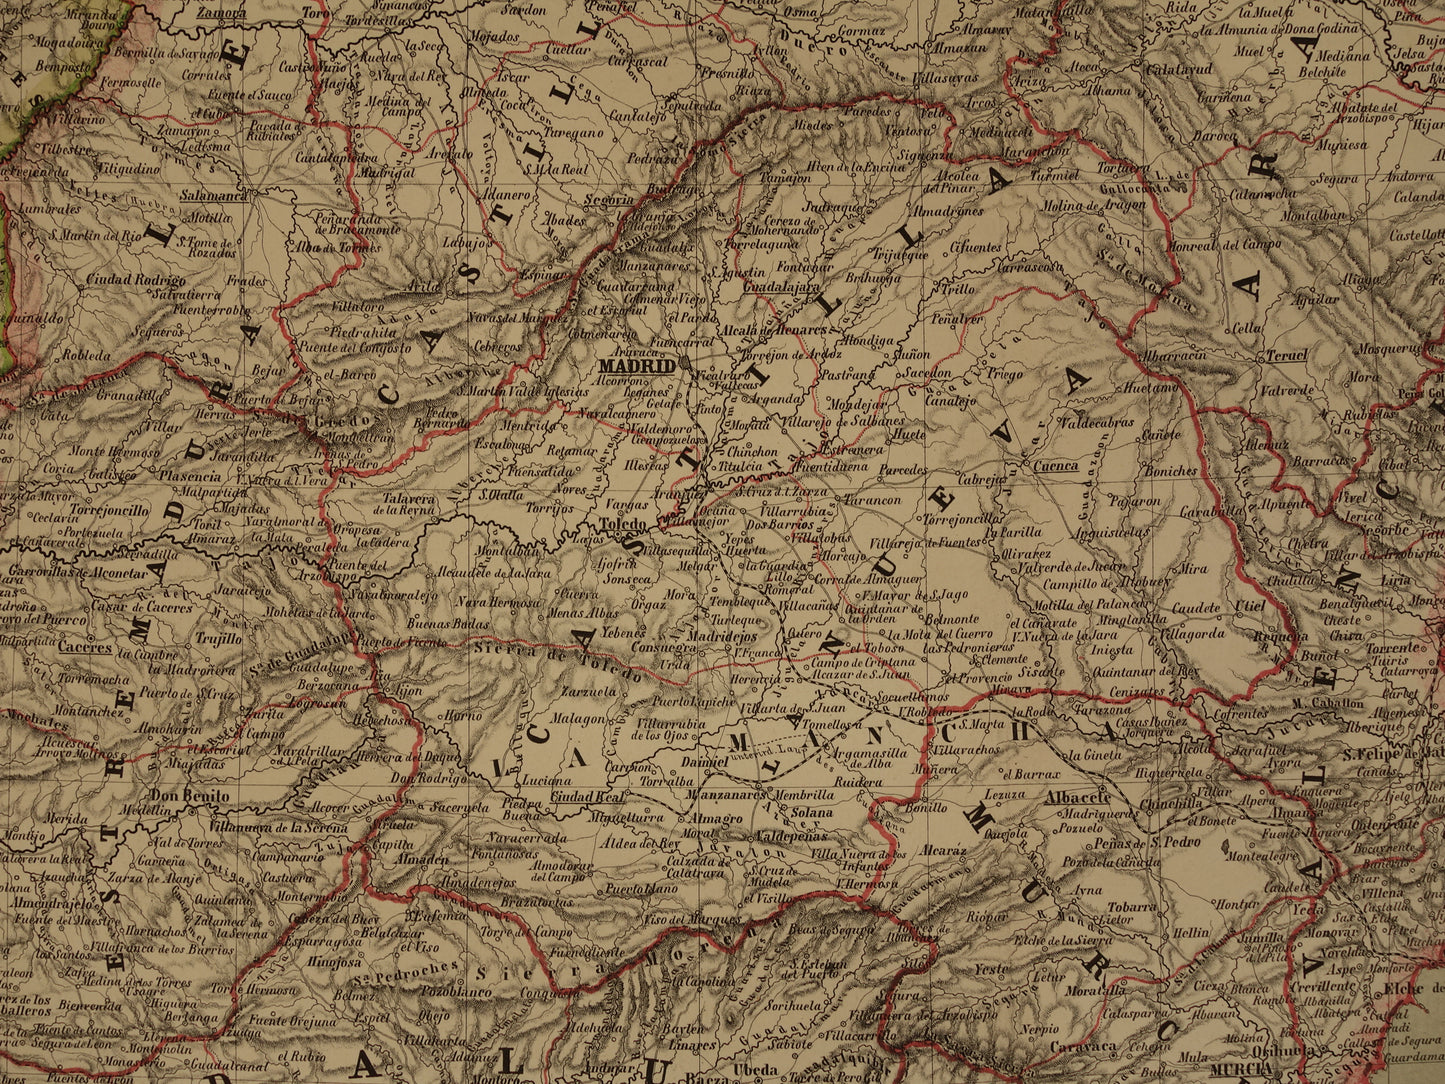 Grote oude kaart van Spanje en Portugal in 1857 originele antieke landkaart met jaartal